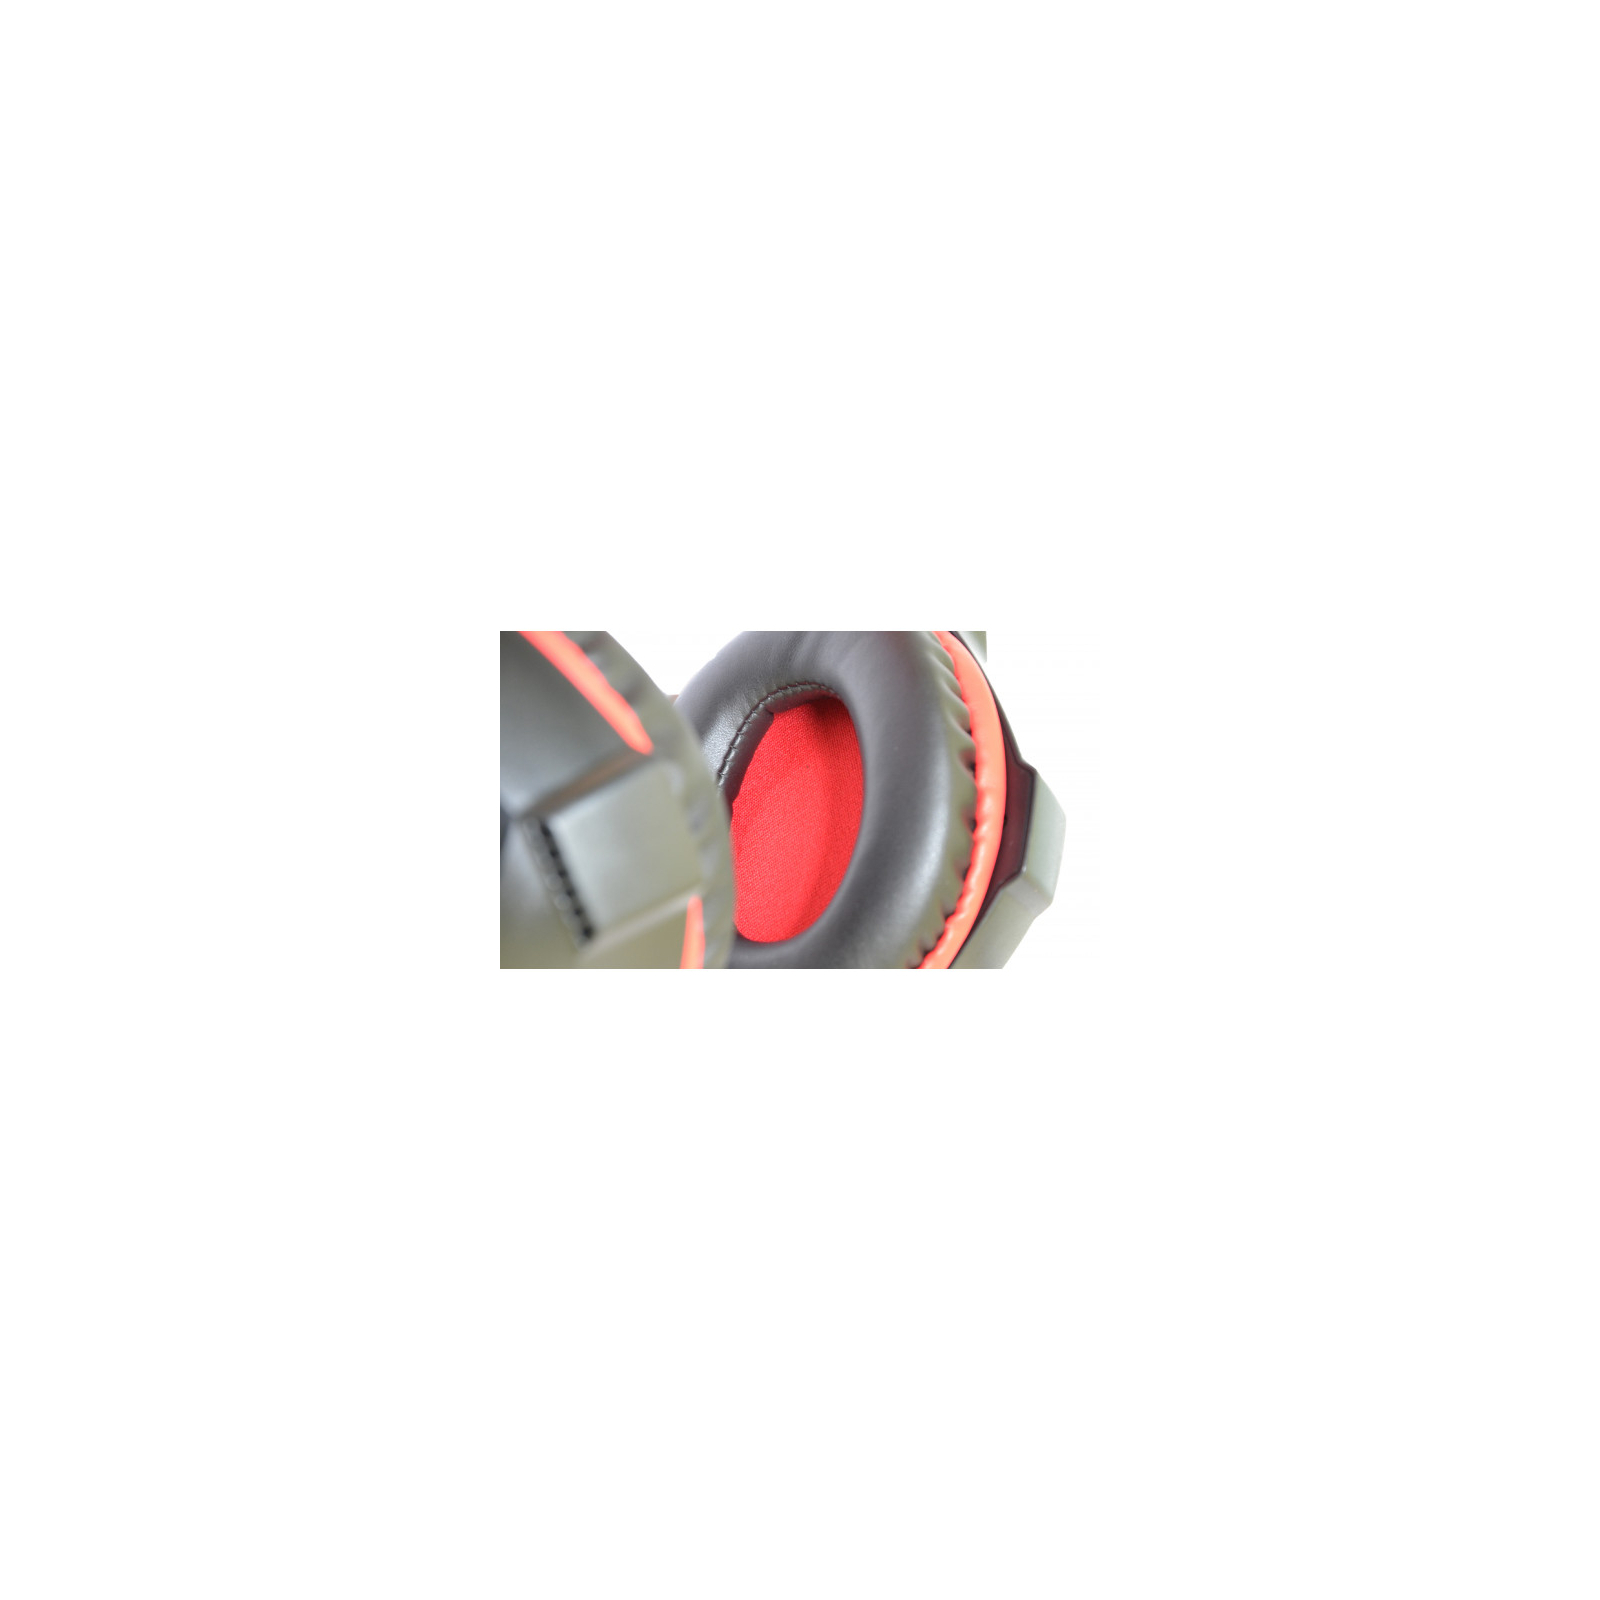 Навушники Microlab G7 Black-Red (G7_b+r) зображення 5